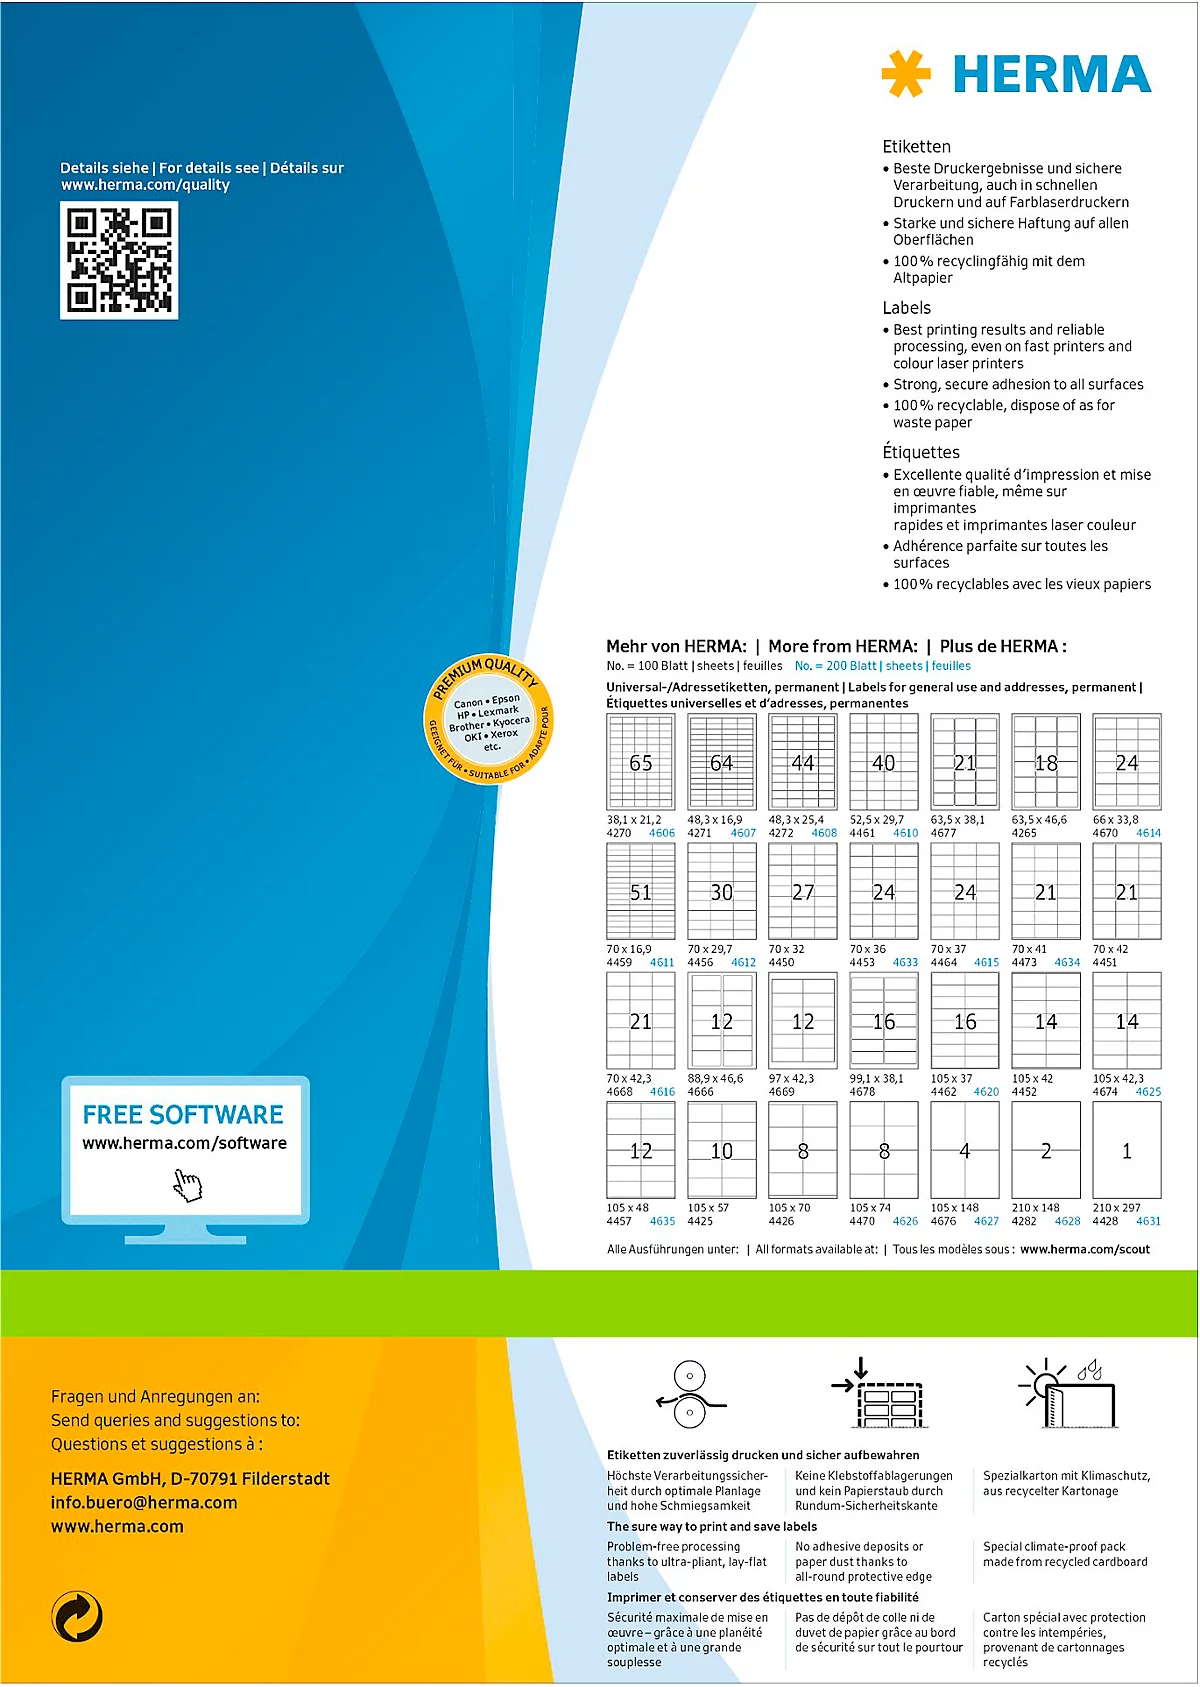 Herma Premium-Adressetiketten Nr. 4624, 97 x 67,7 mm, selbstklebend, permanenthaftend, bedruckbar, Papier, weiß, 1600 Stück auf 200 Blatt